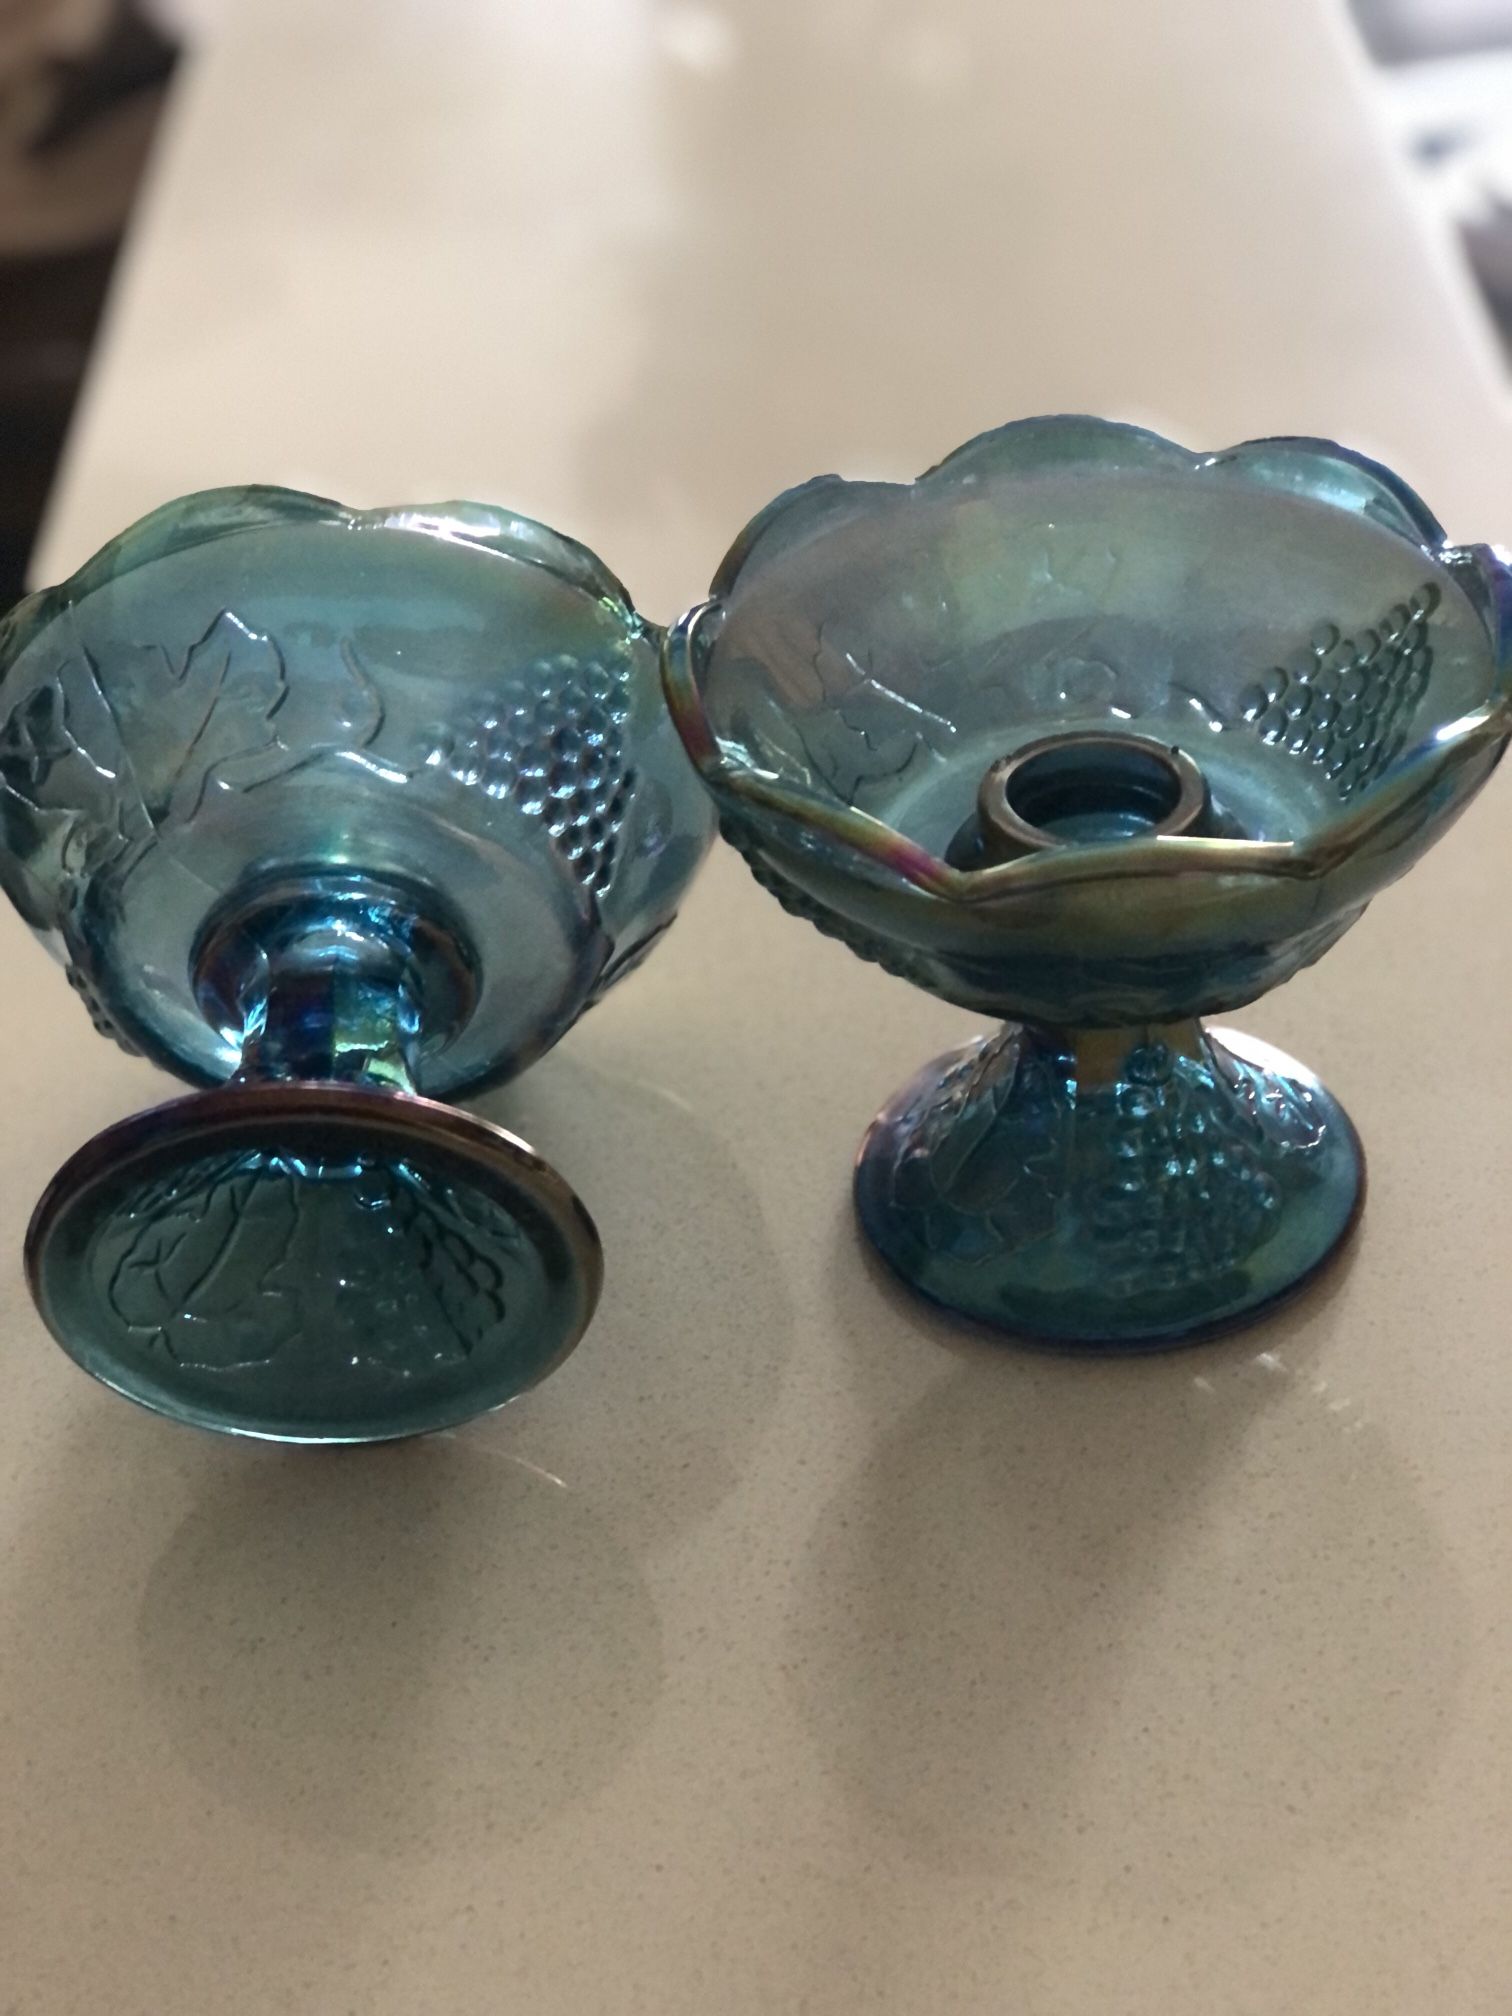 Vintage Blue Carnival Glass